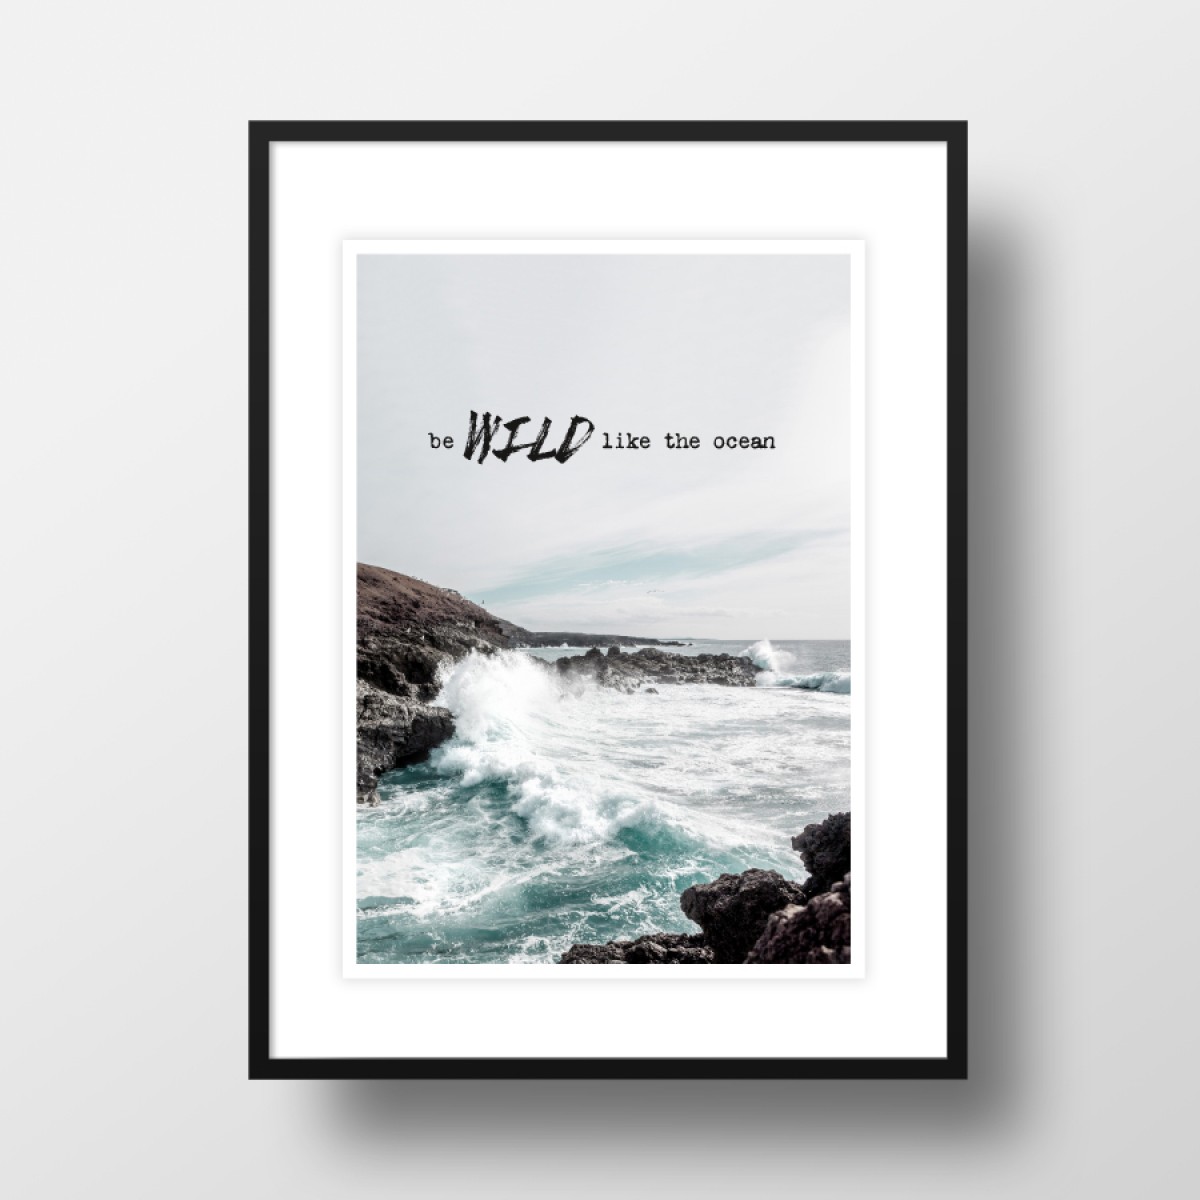 Amy & Kurt Berlin A3 Artprint "Wild like the ocean" 